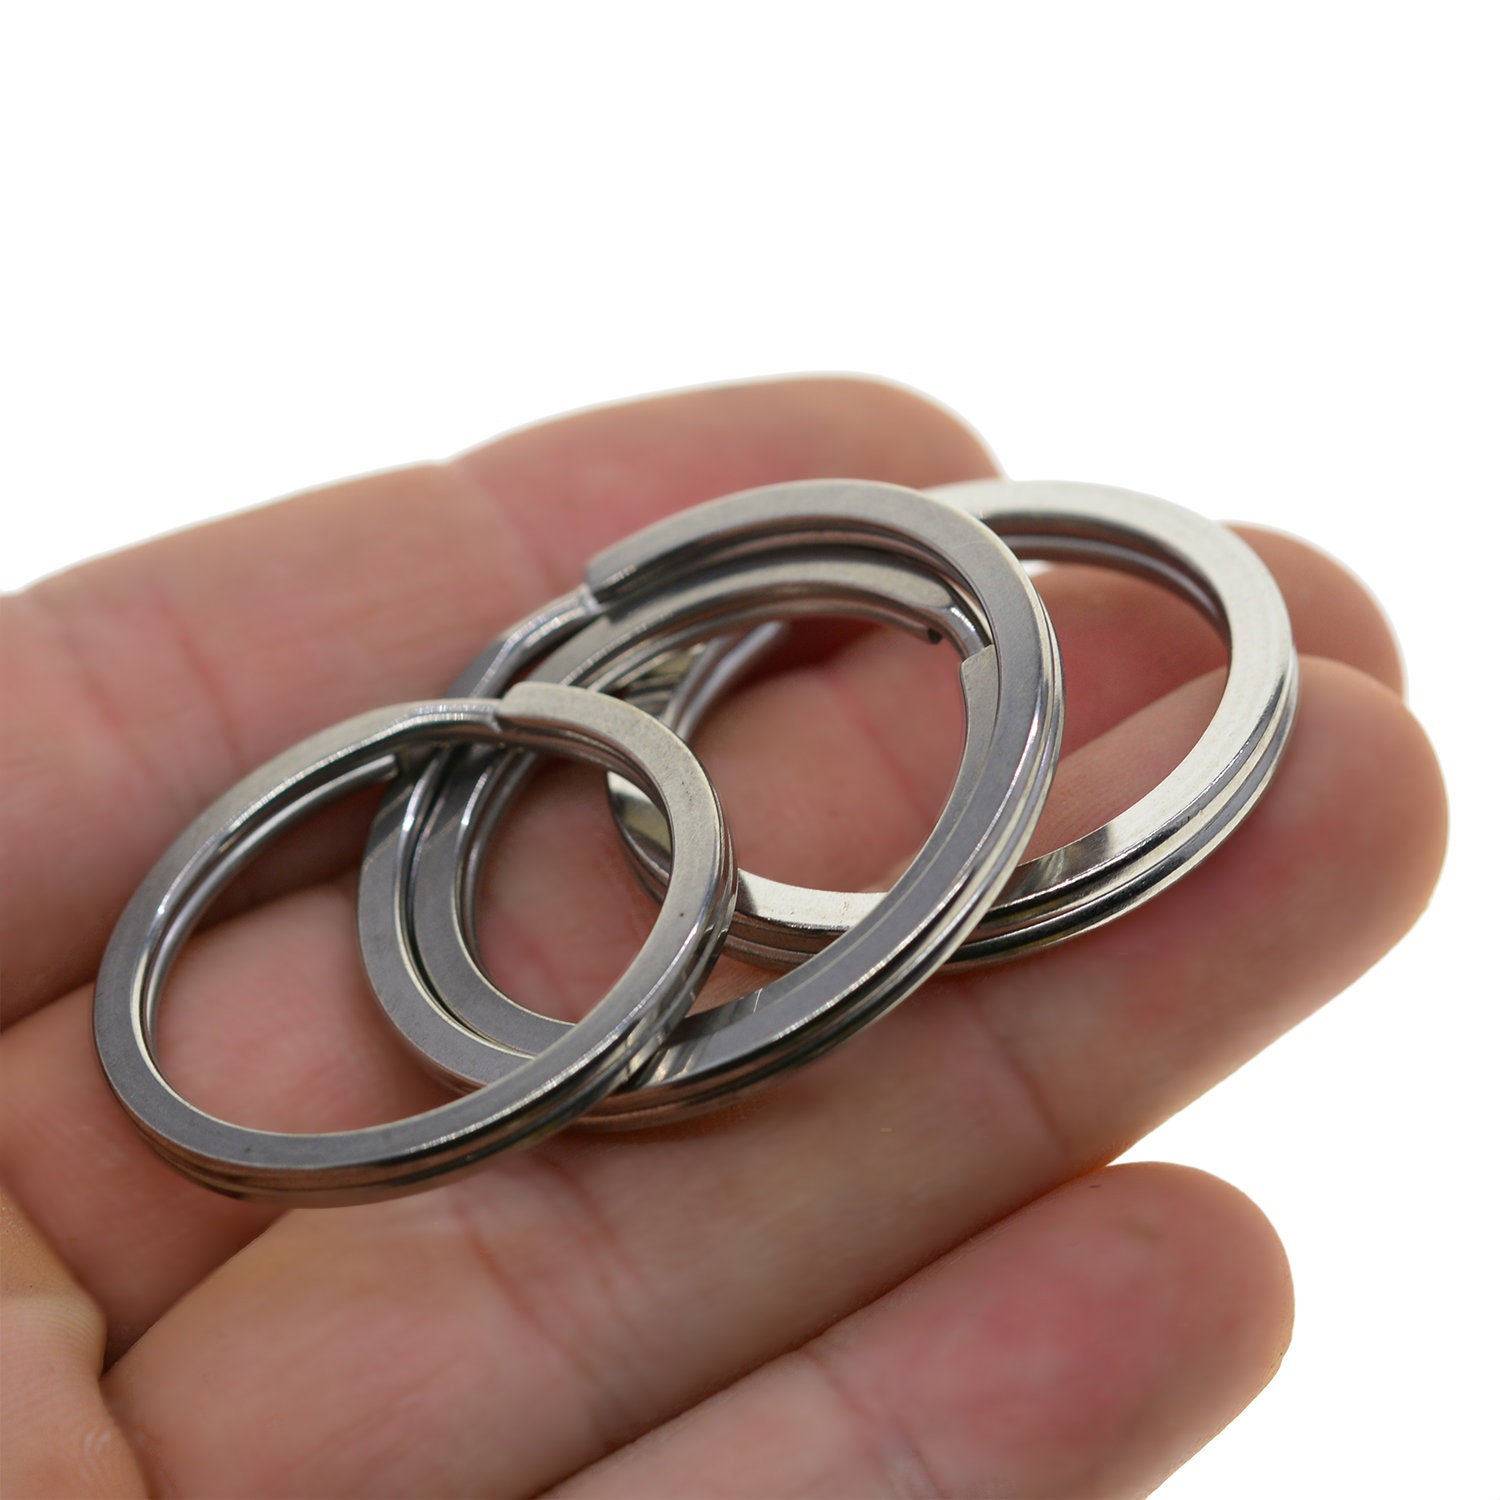 Split ring for keys, gilded stainless steel, 32x3mm, 1pc.